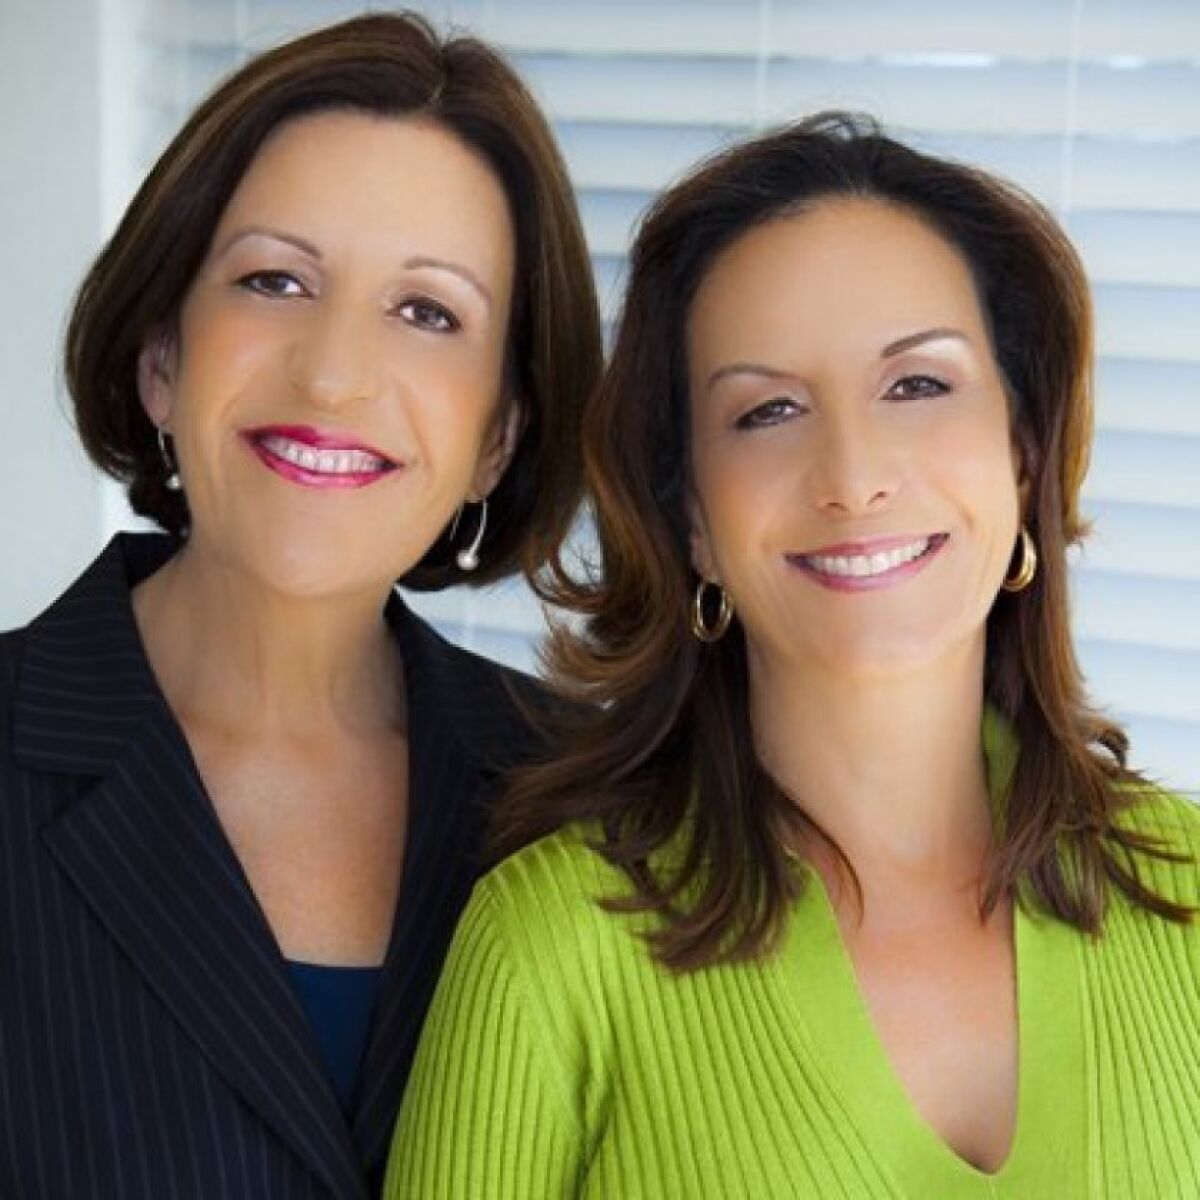 La Jolla real estate agents Susana Corrigan (left) and Patty Cohen.